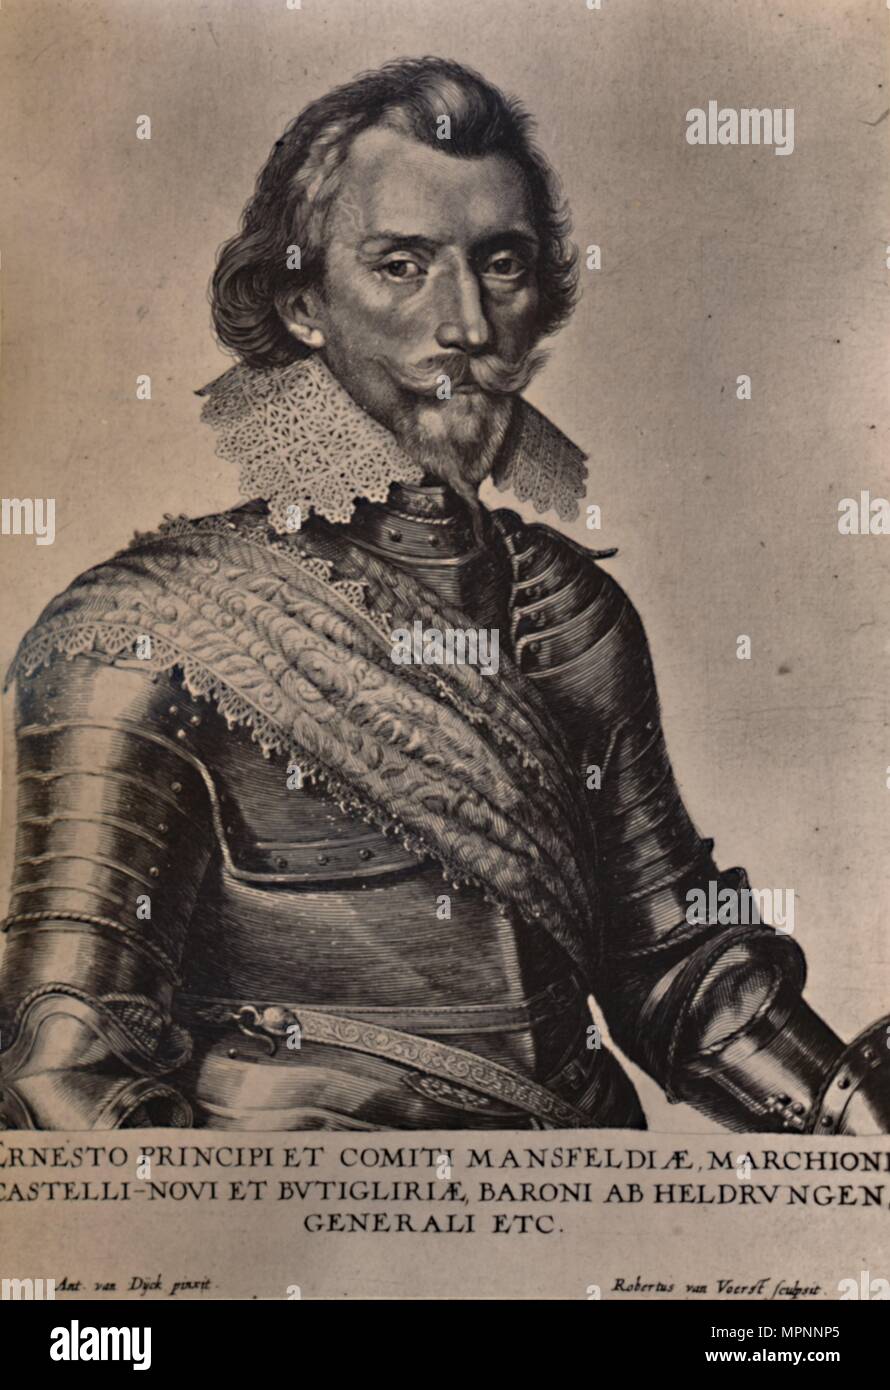 Count Ernst von Mansfeld, German general of the Thirty Years War, 17th century (1894). Artist: Robert van Voerst. Stock Photo